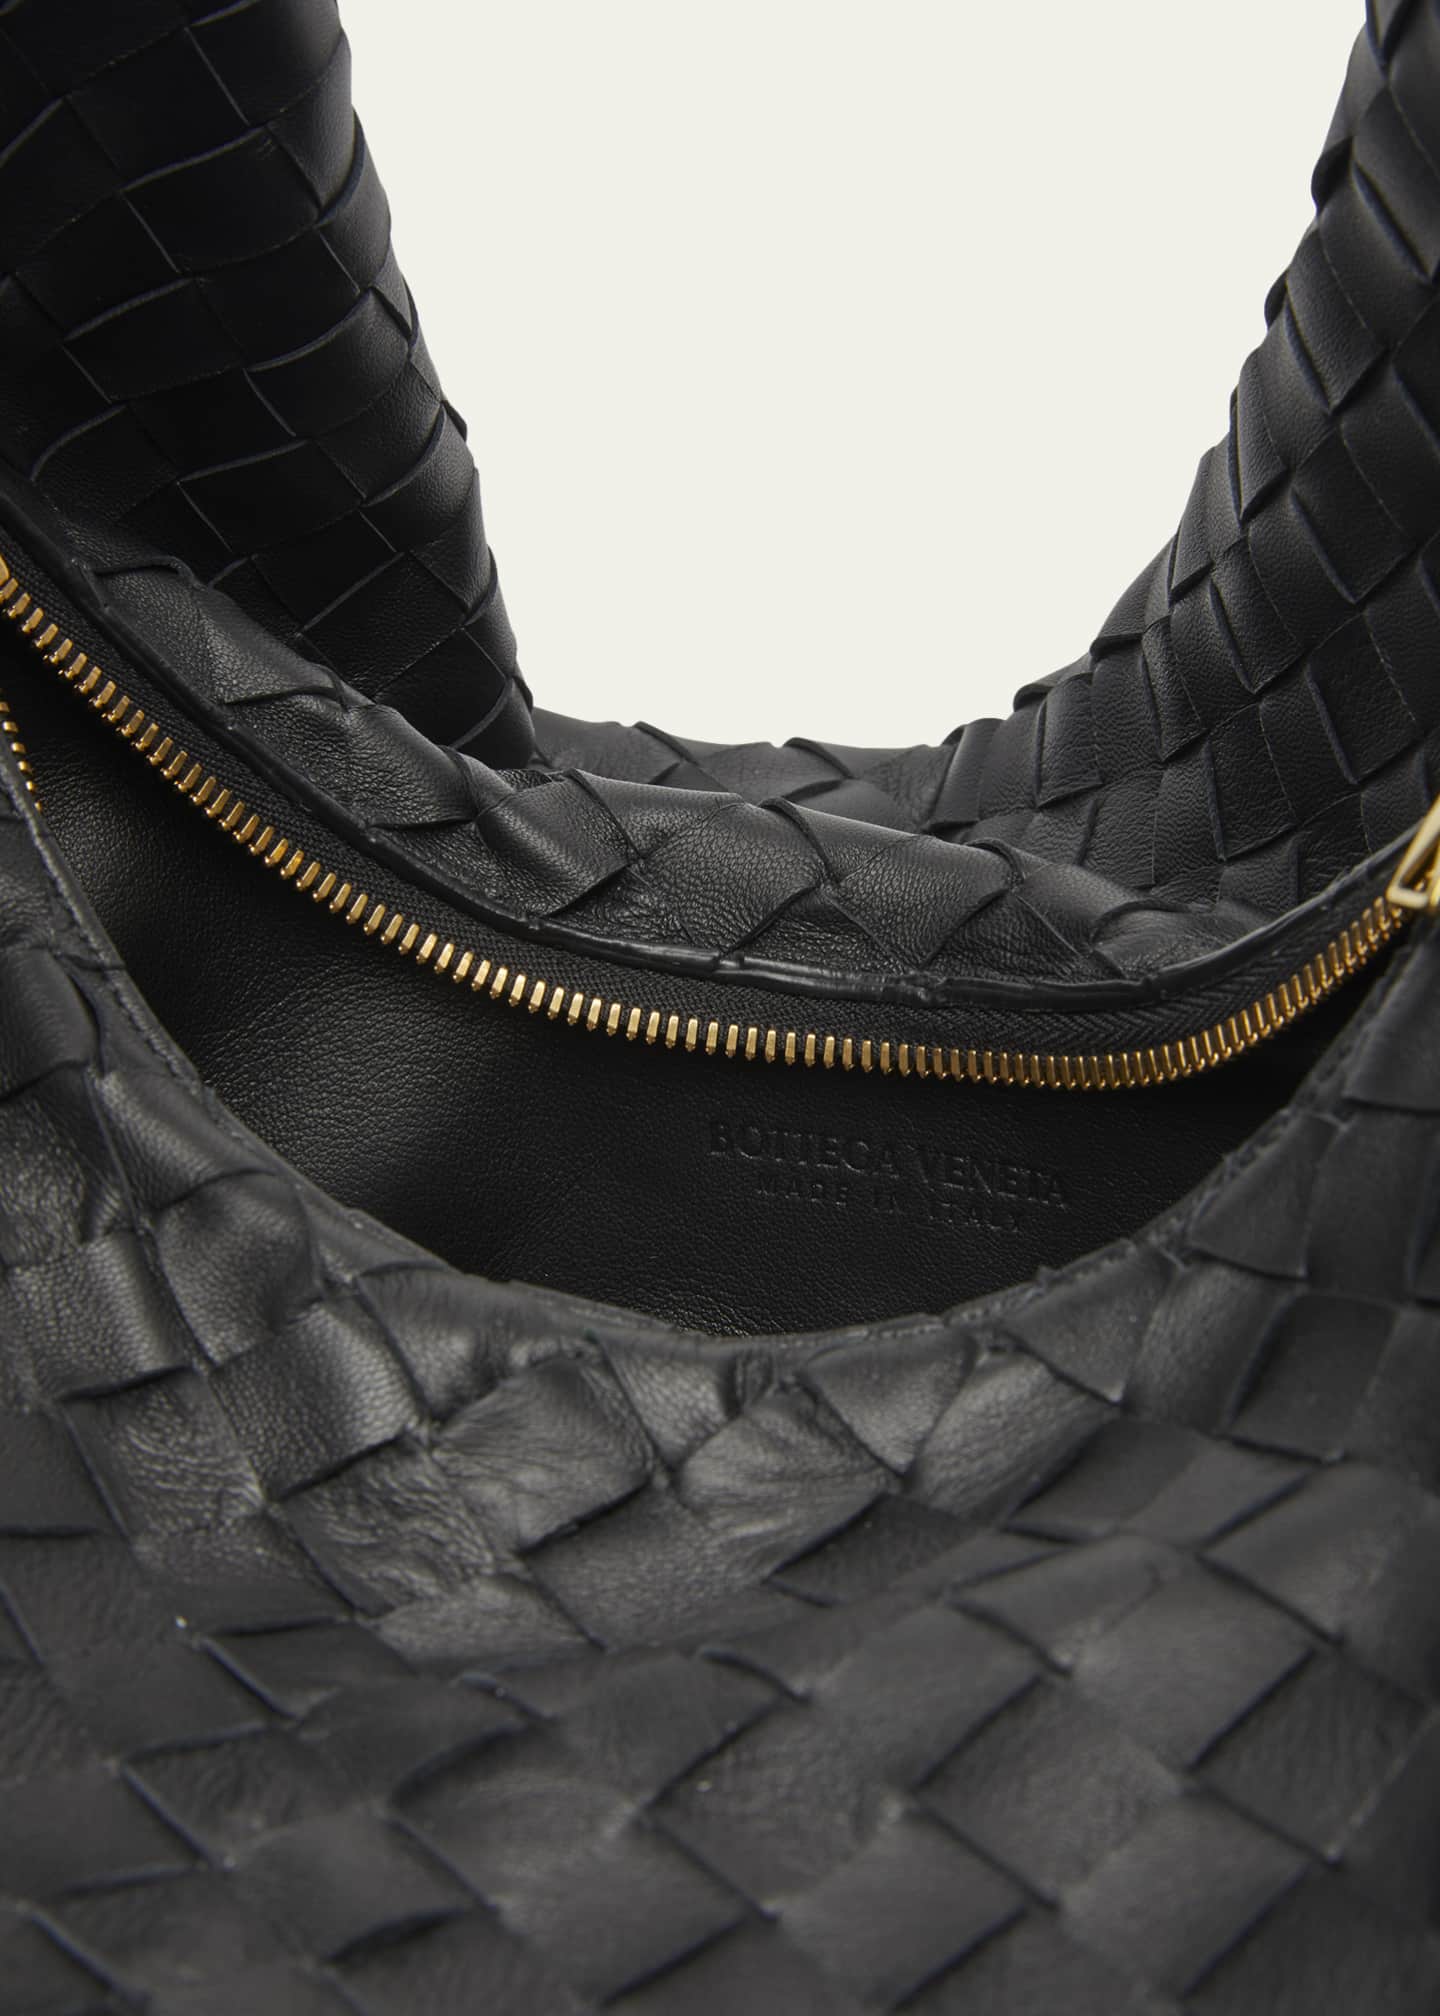 Bottega Veneta Intrecciato Weave Messenger Bag Black in Leather - US